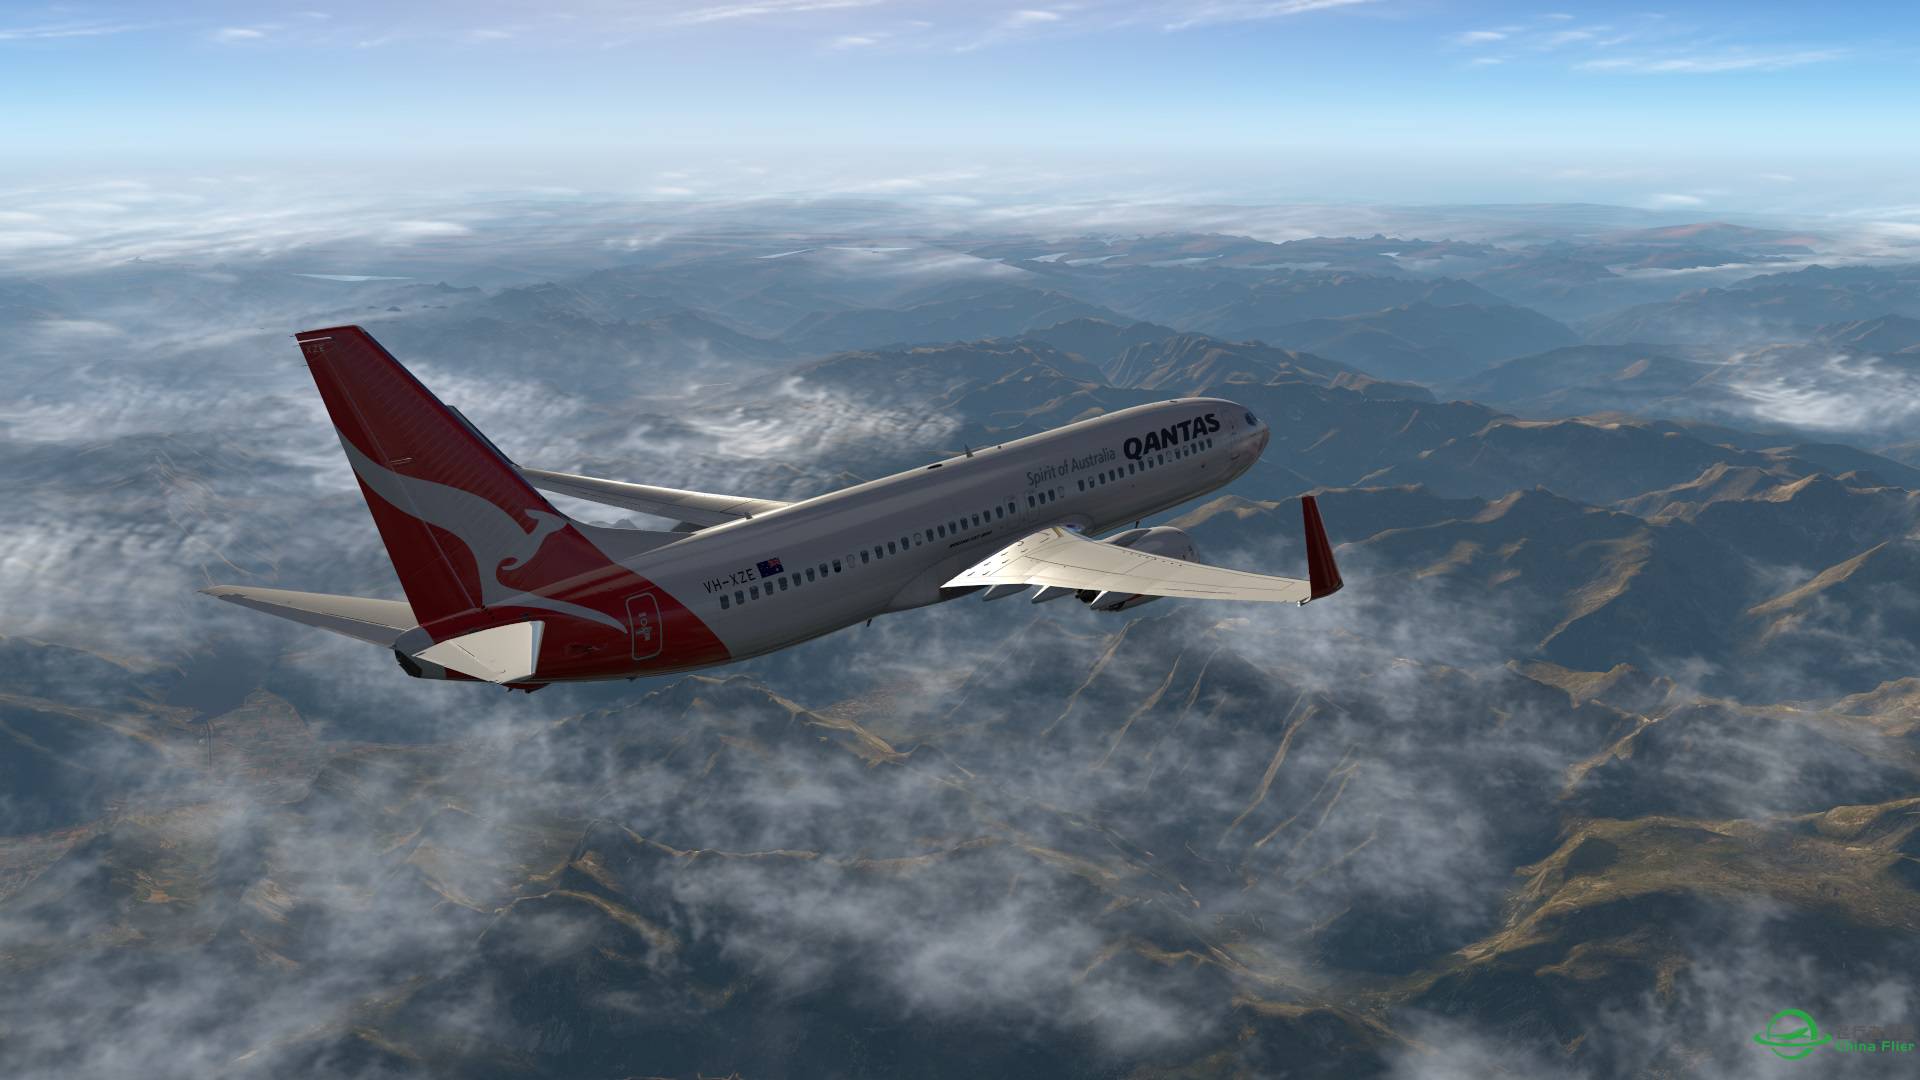 飞跃阿尔卑斯山 X-plane 11-9021 